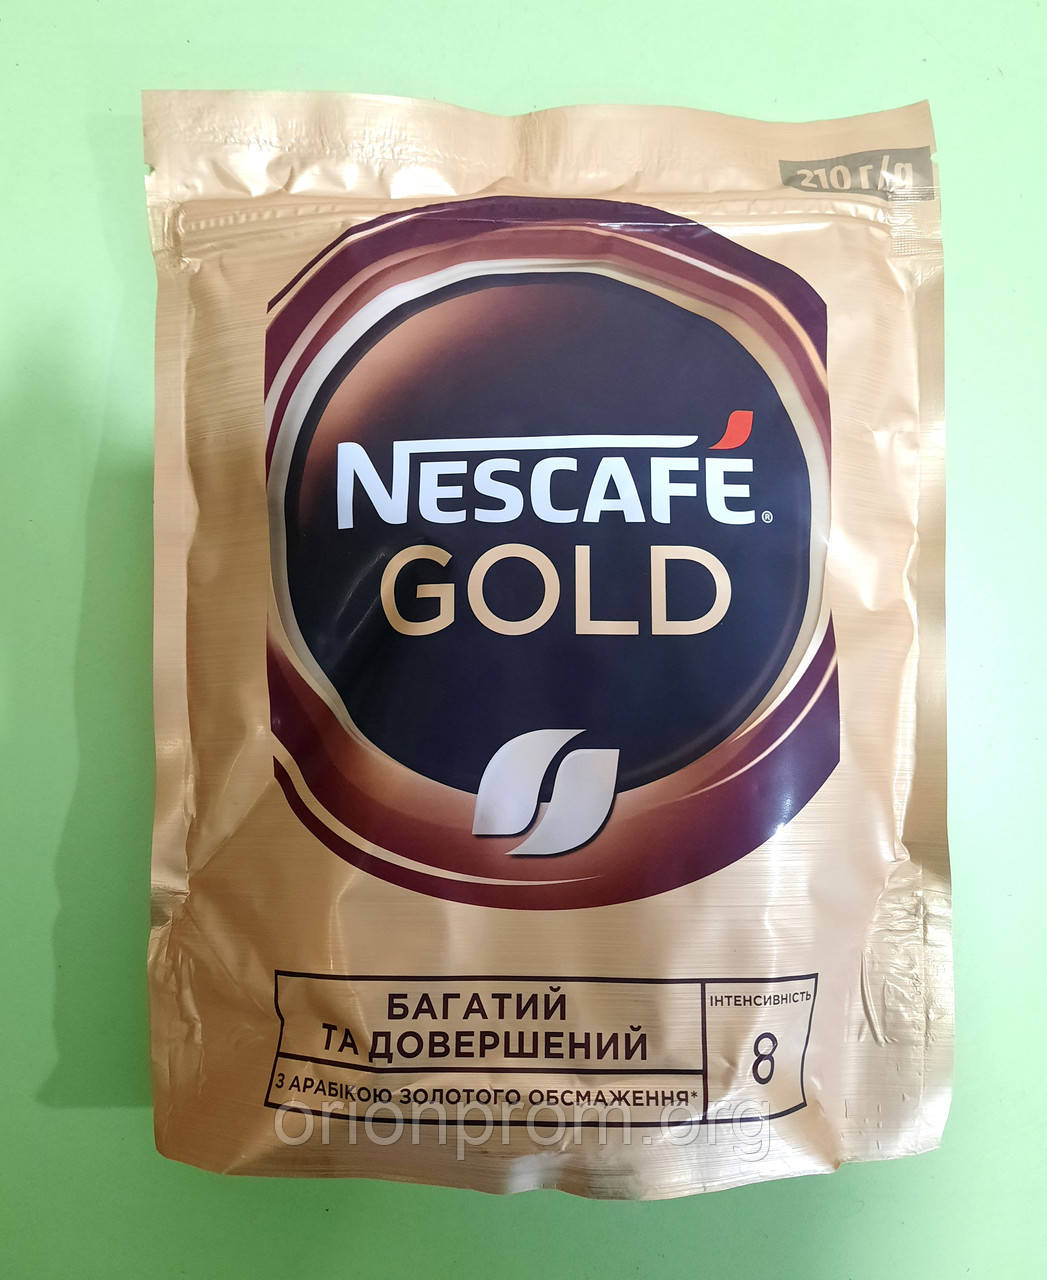 Кава Nescafe Gold 210 г розчинна